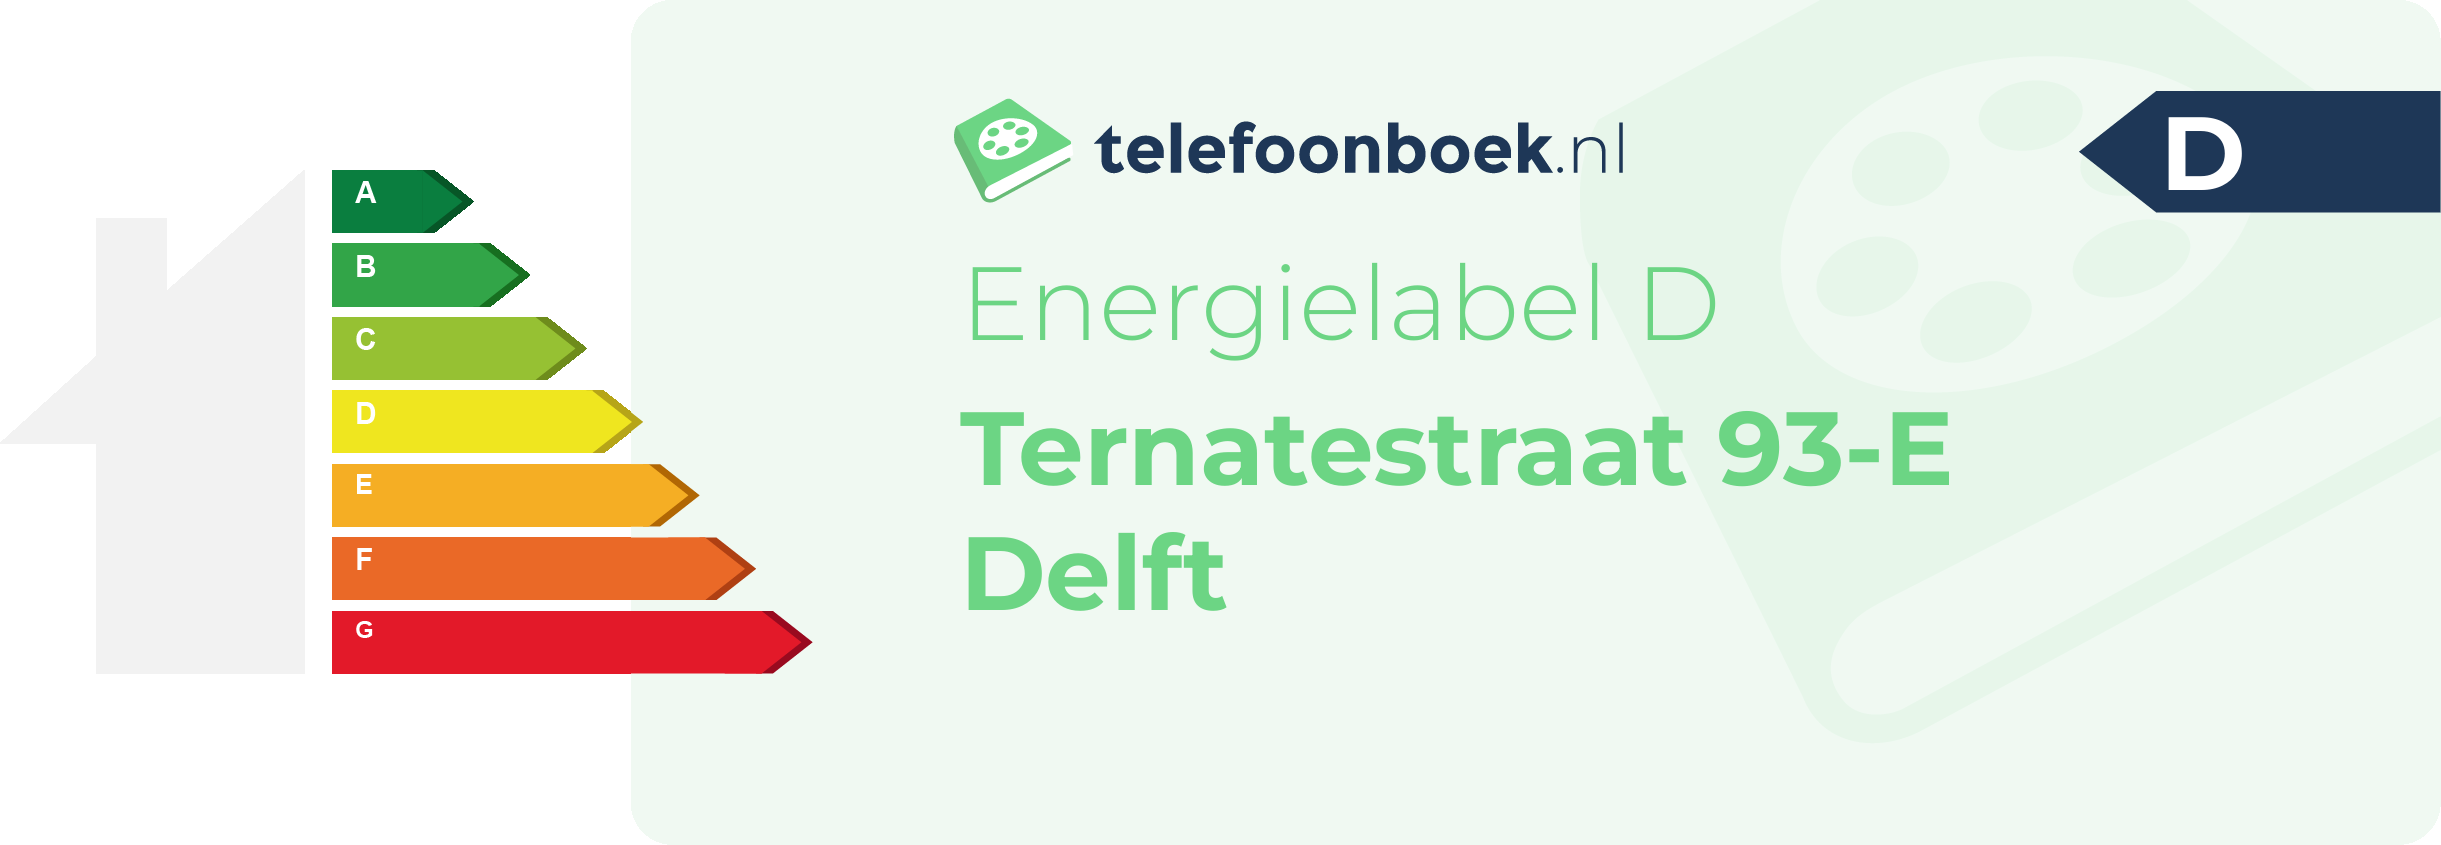 Energielabel Ternatestraat 93-E Delft